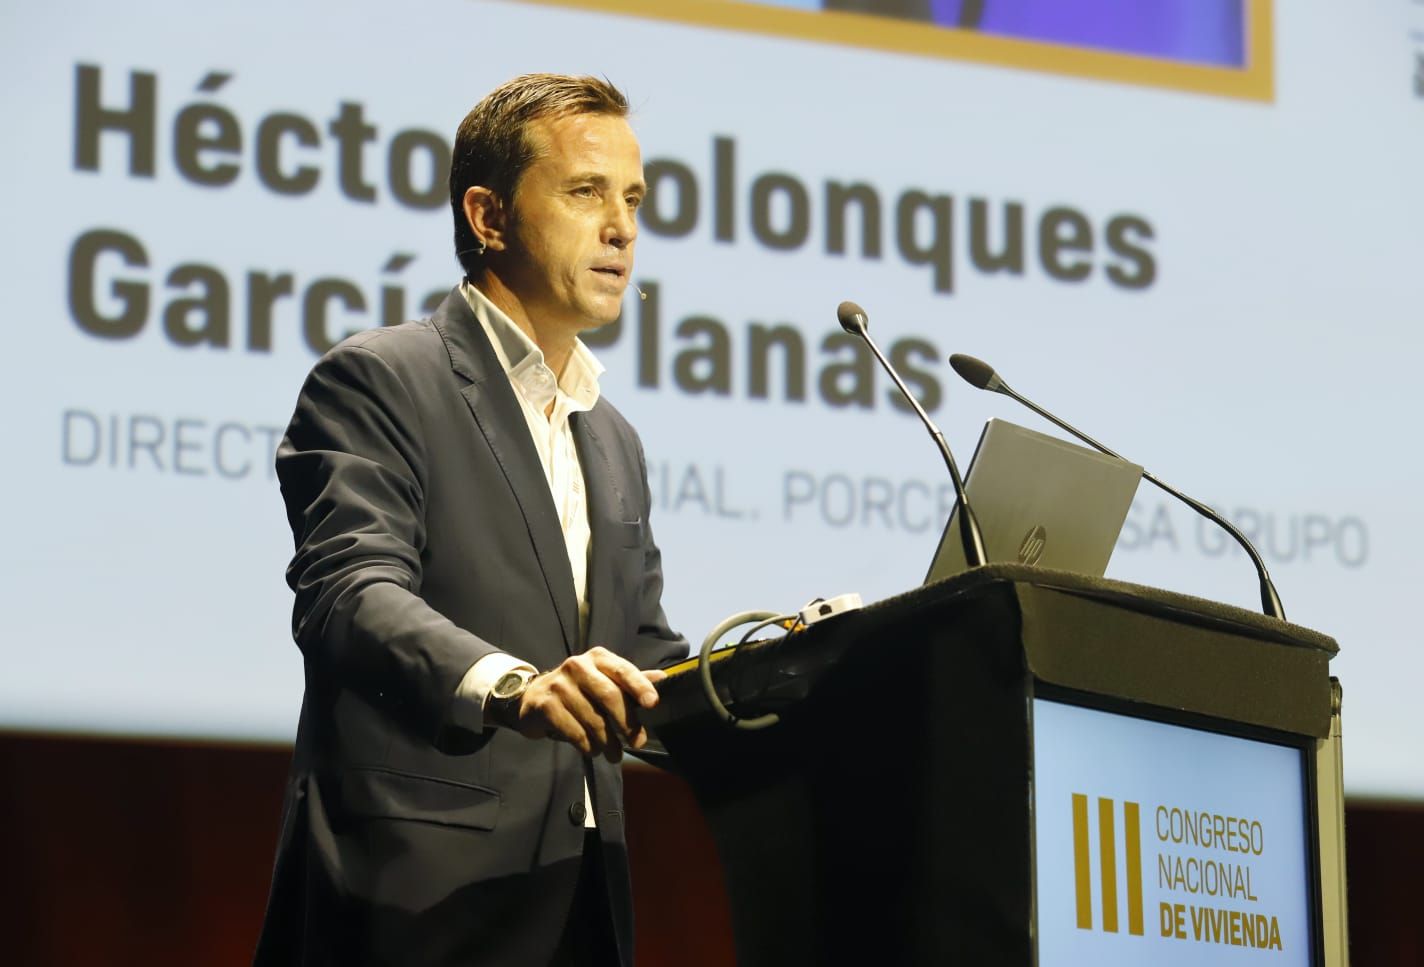 Conferencia de Héctor Colonques en València en el Congreso Nacional de Vivienda